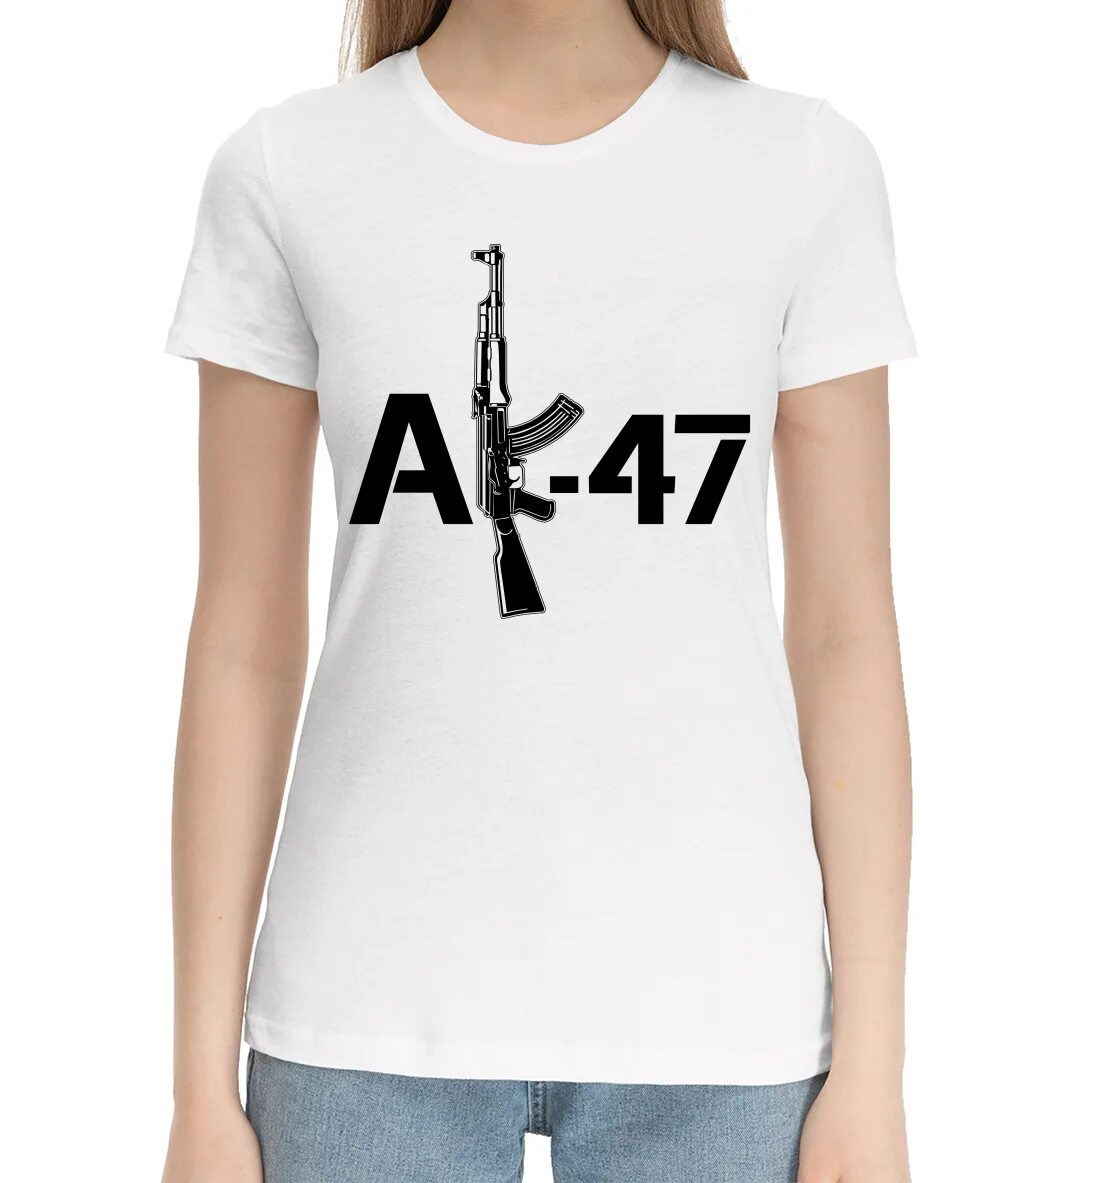 Футболка АК 47. Ak47 футболка. Футболка с автоматом Калашникова. Футболка женская АК-47. Ак футболка жынды очки